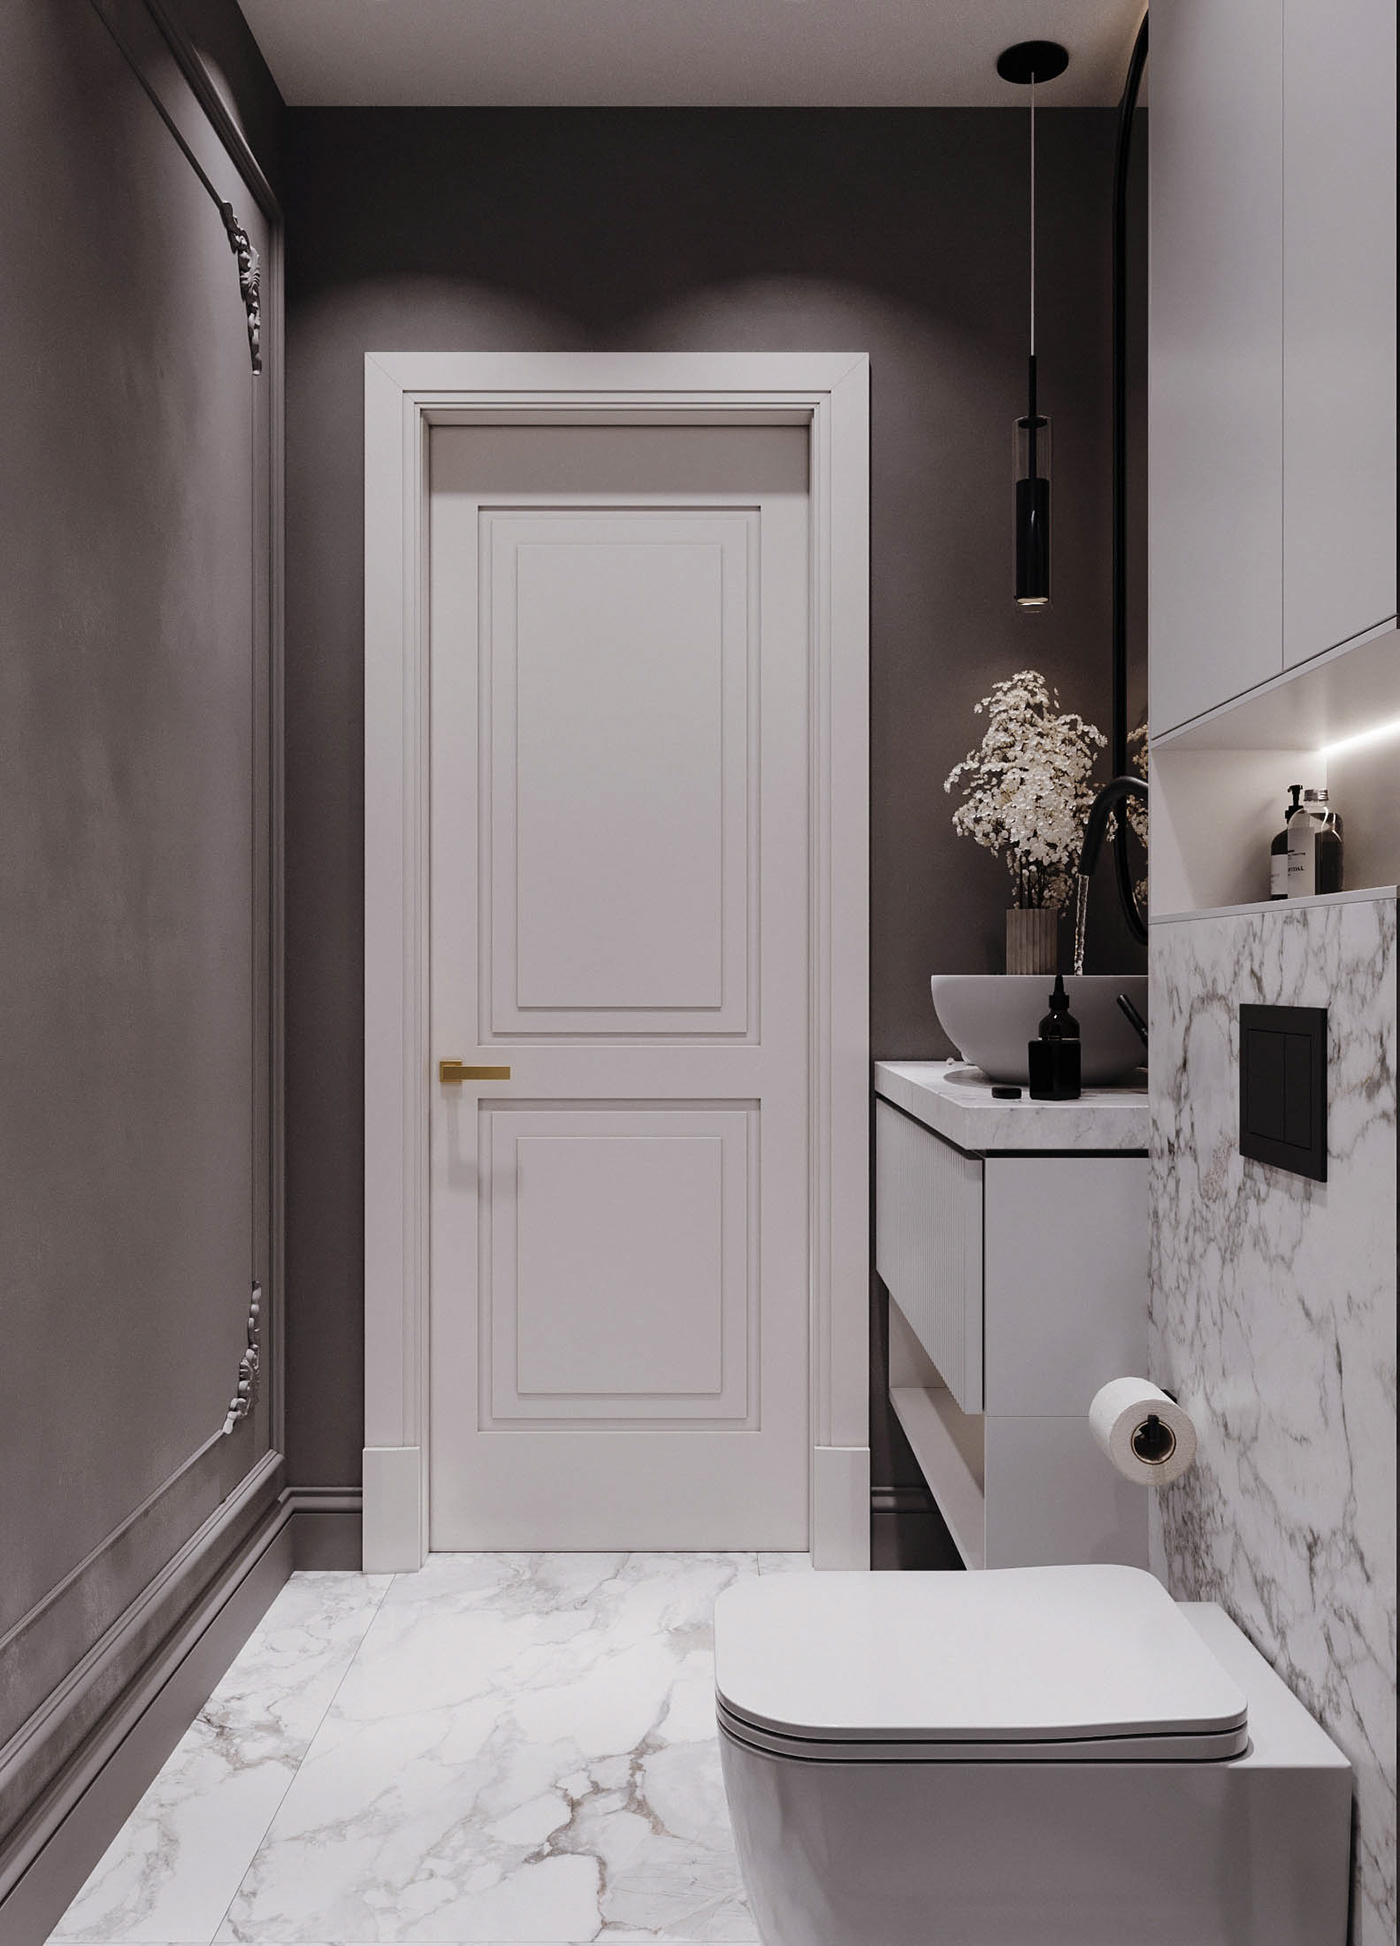 интерьер дизайн интерьера interior design  visualization визуализация Визуализация интерьера corona дизайн ванной bathroom bathroom design